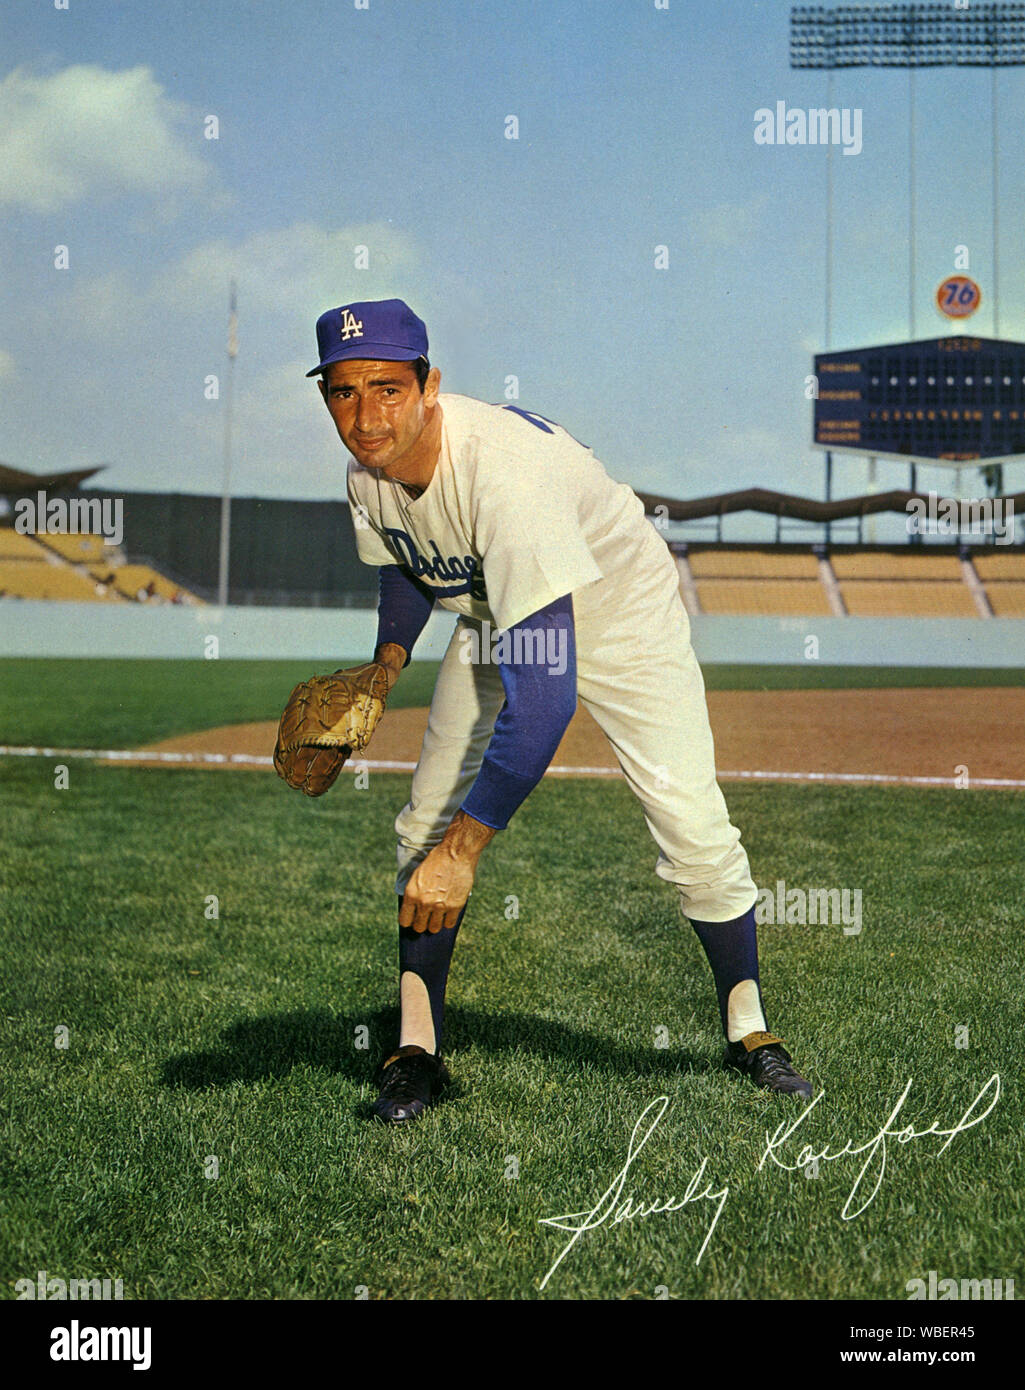 Sandy Koufax, le lanceur étoile pour les Dodgers de Los Angeles dans les années 1960 pose pour une photo souvenir sur le domaine de l'ouverture récente du stade Dodger circa 1962. Banque D'Images